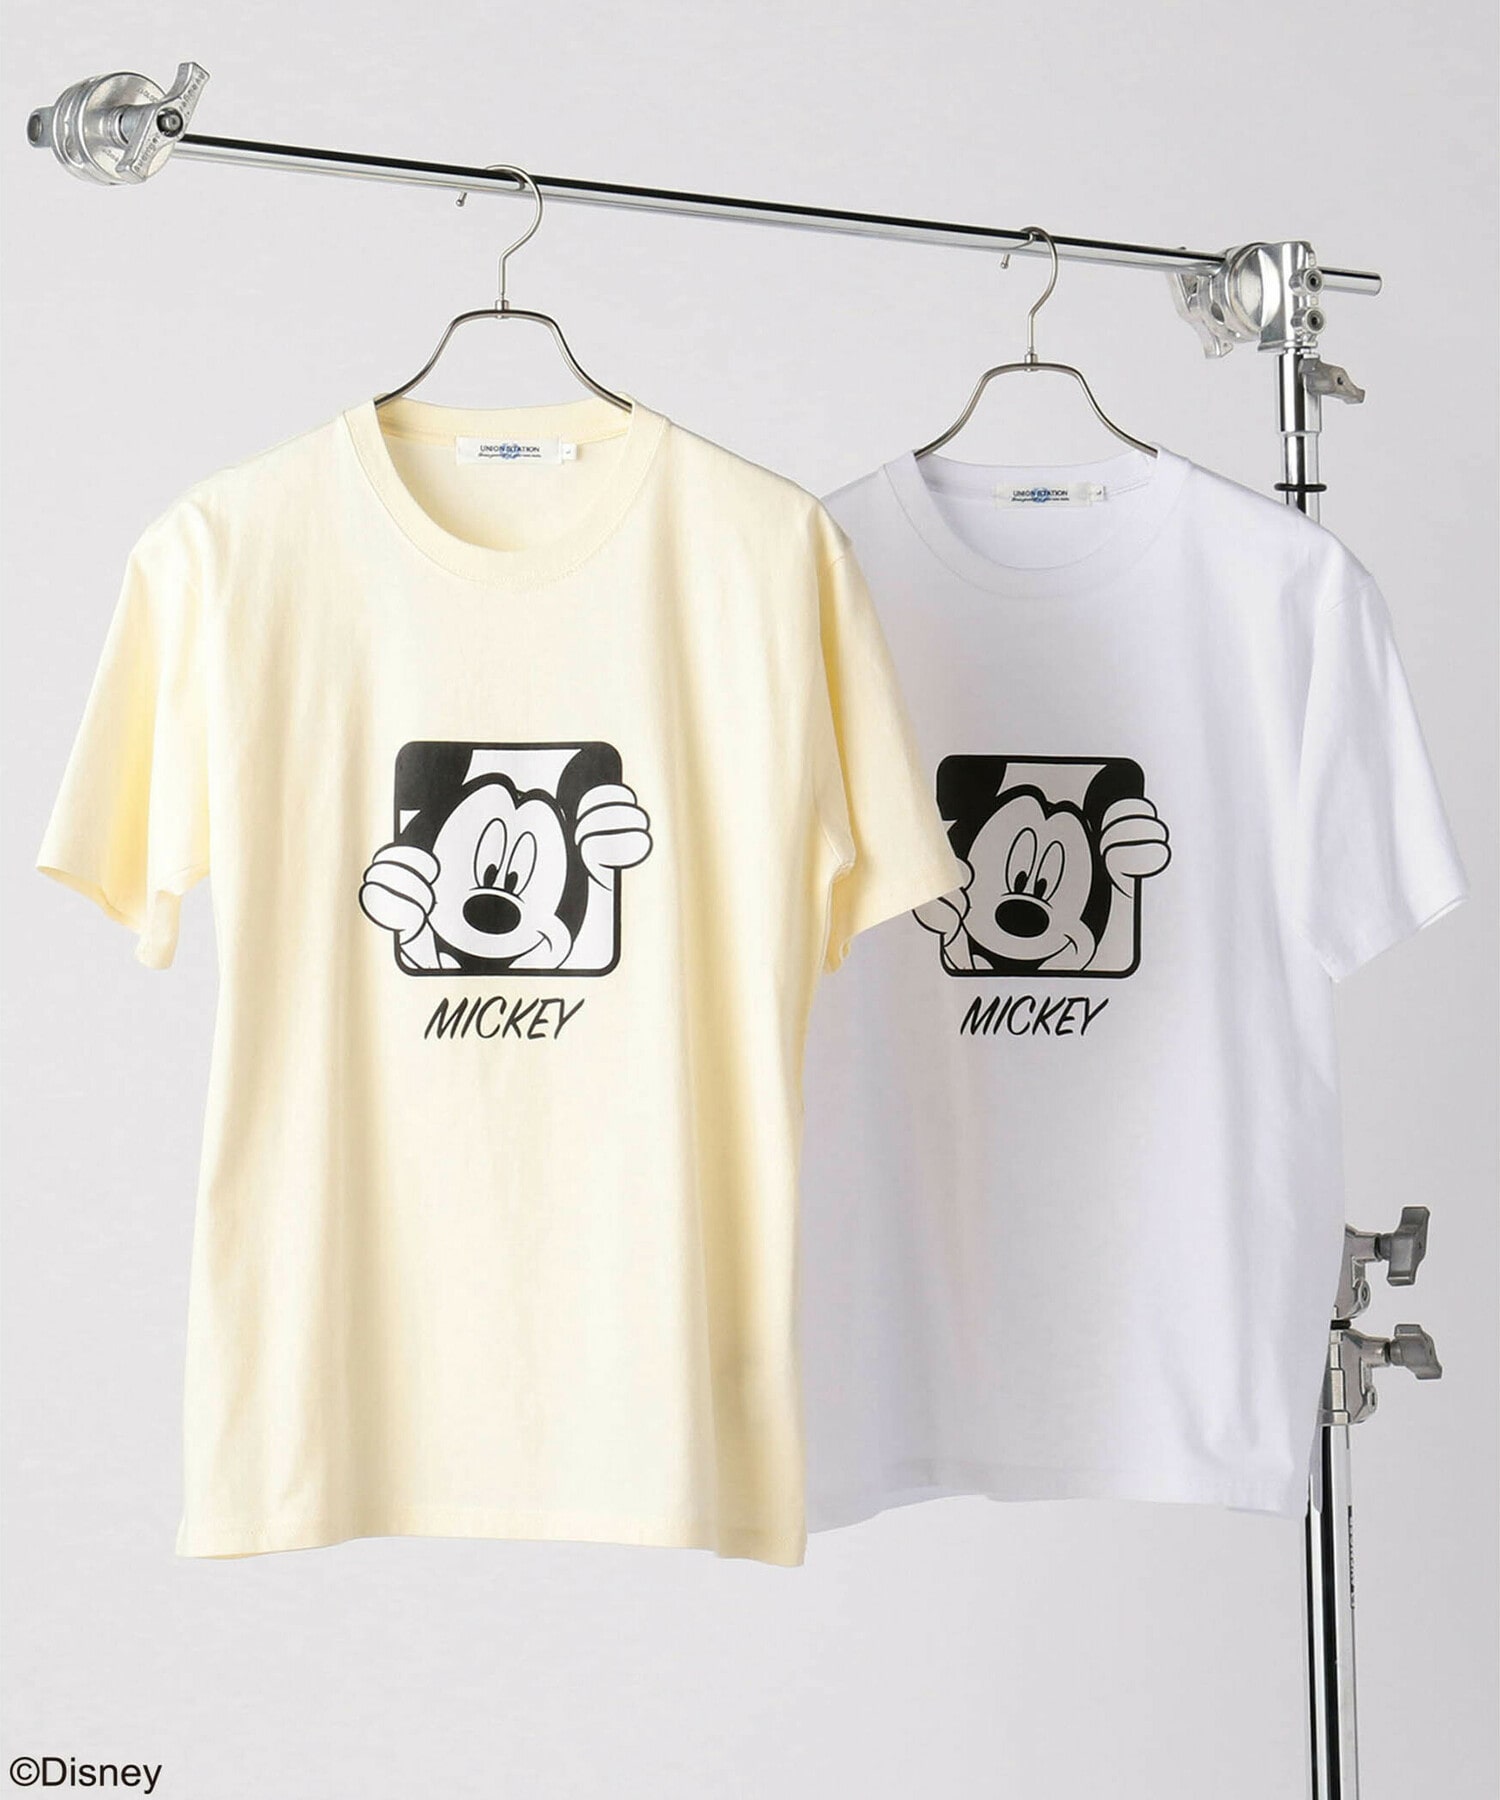 期間限定more10 Off開催中 ミッキープリントデザインtシャツ Disney ディズニー メンズファッション通販 Men S Bigi Online Store メンズビギ オンラインストア